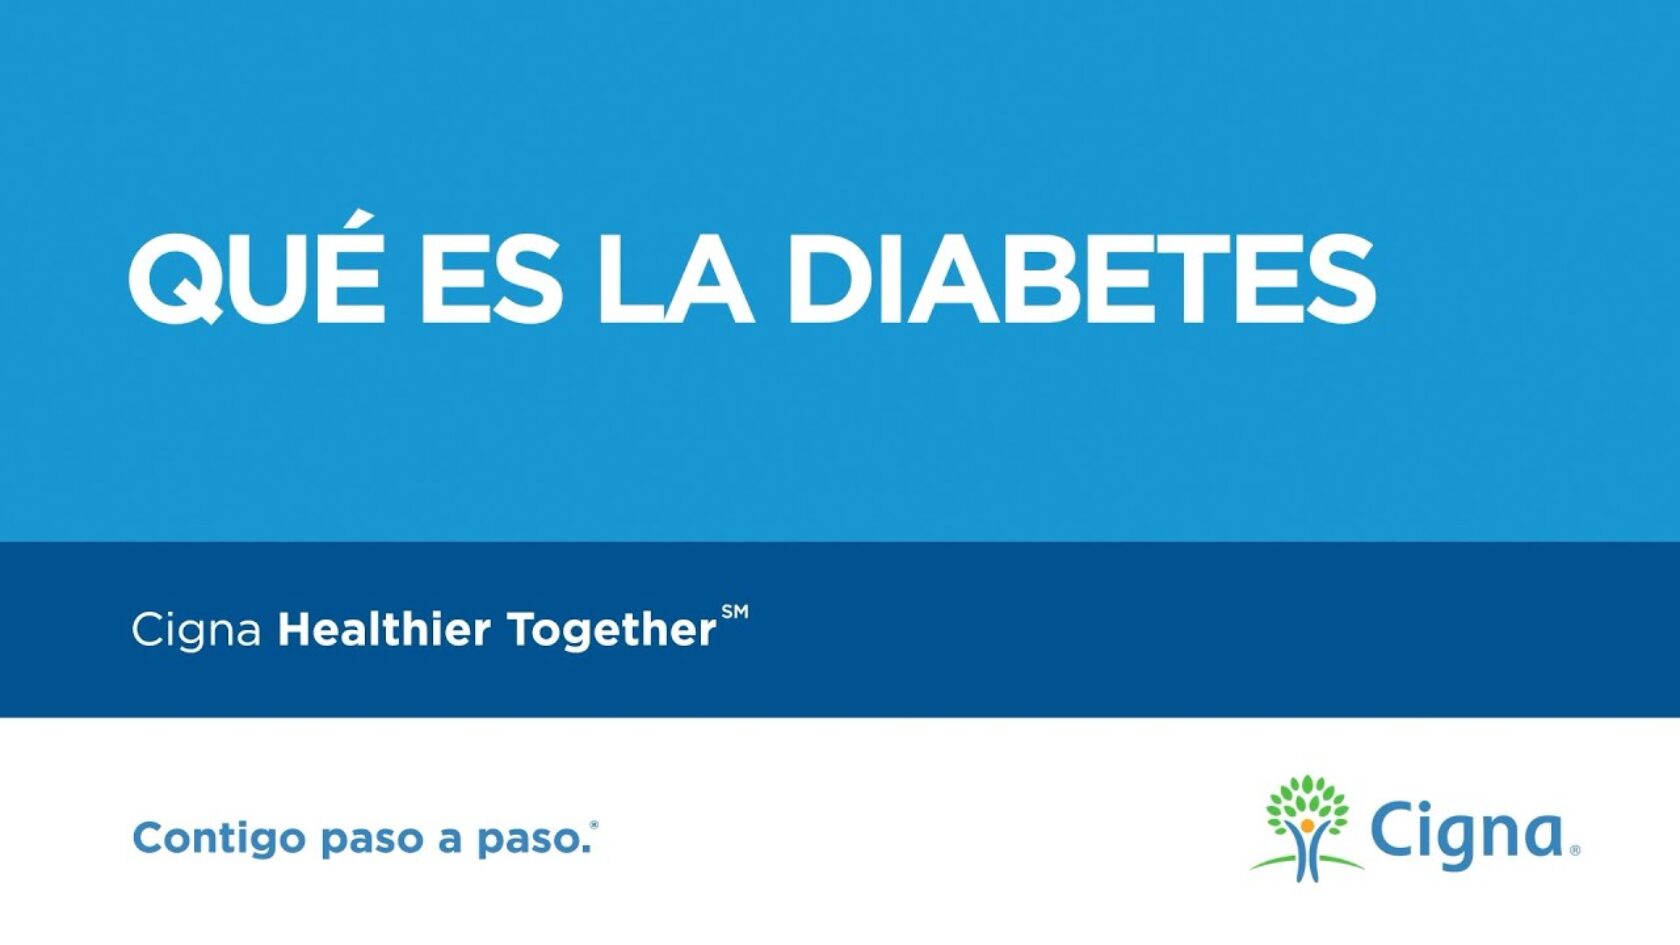 Video: Qué es la diabetes